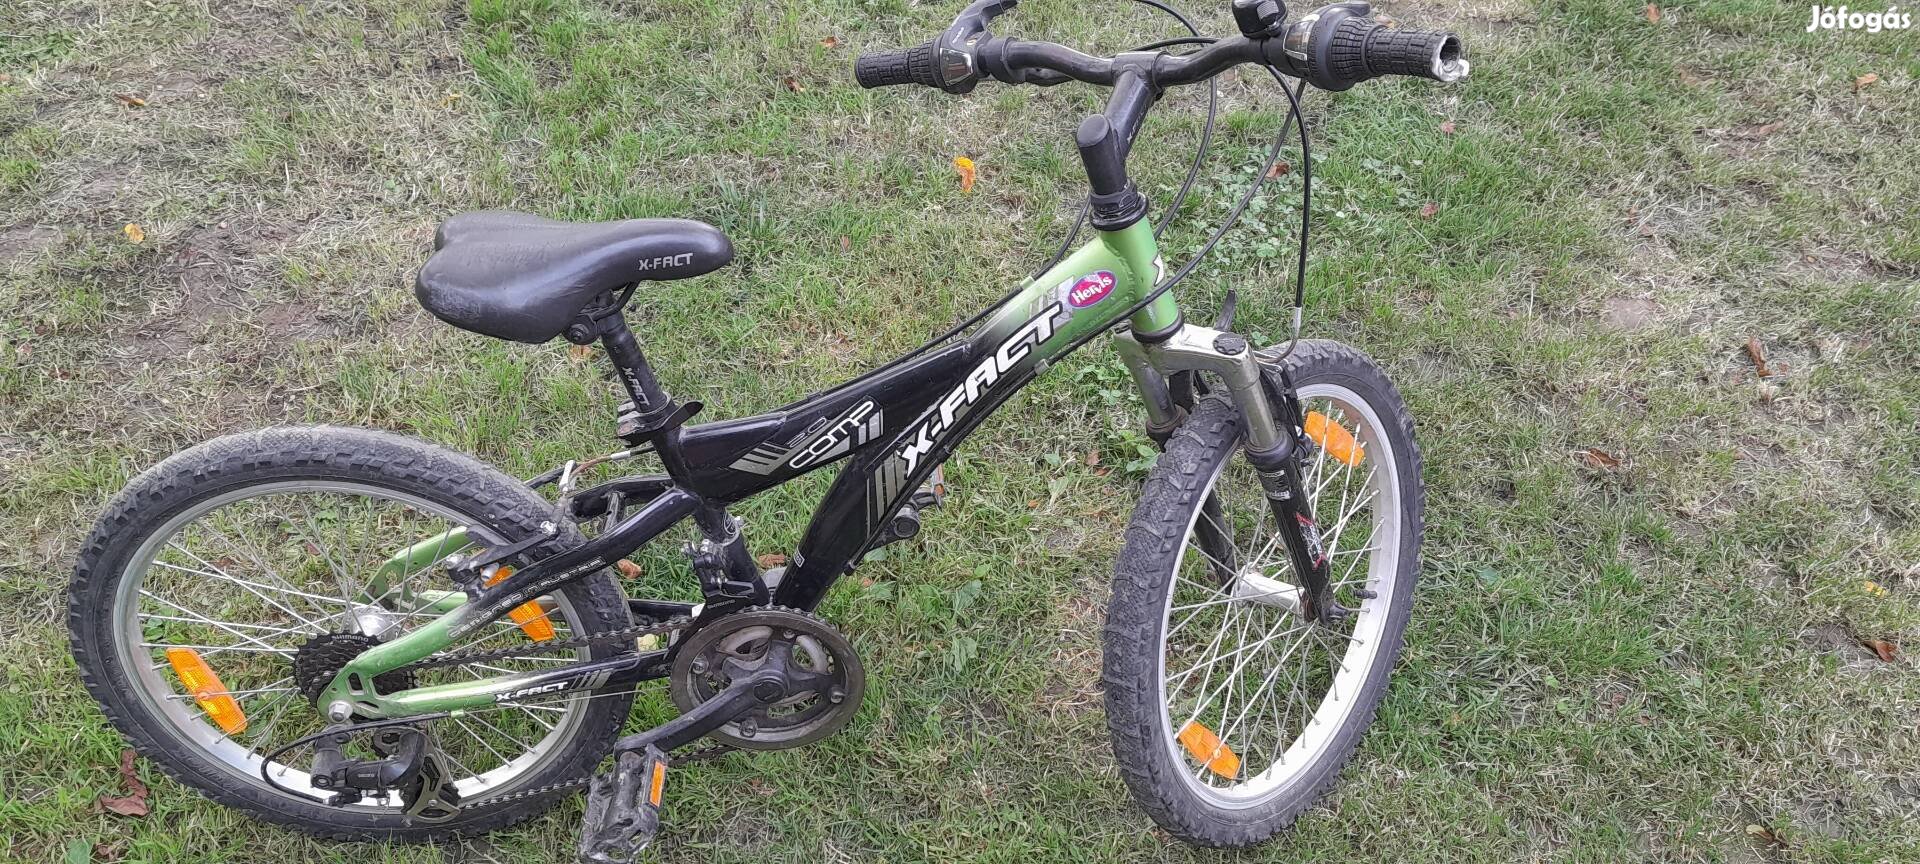 X-fact gyerek kerékpár